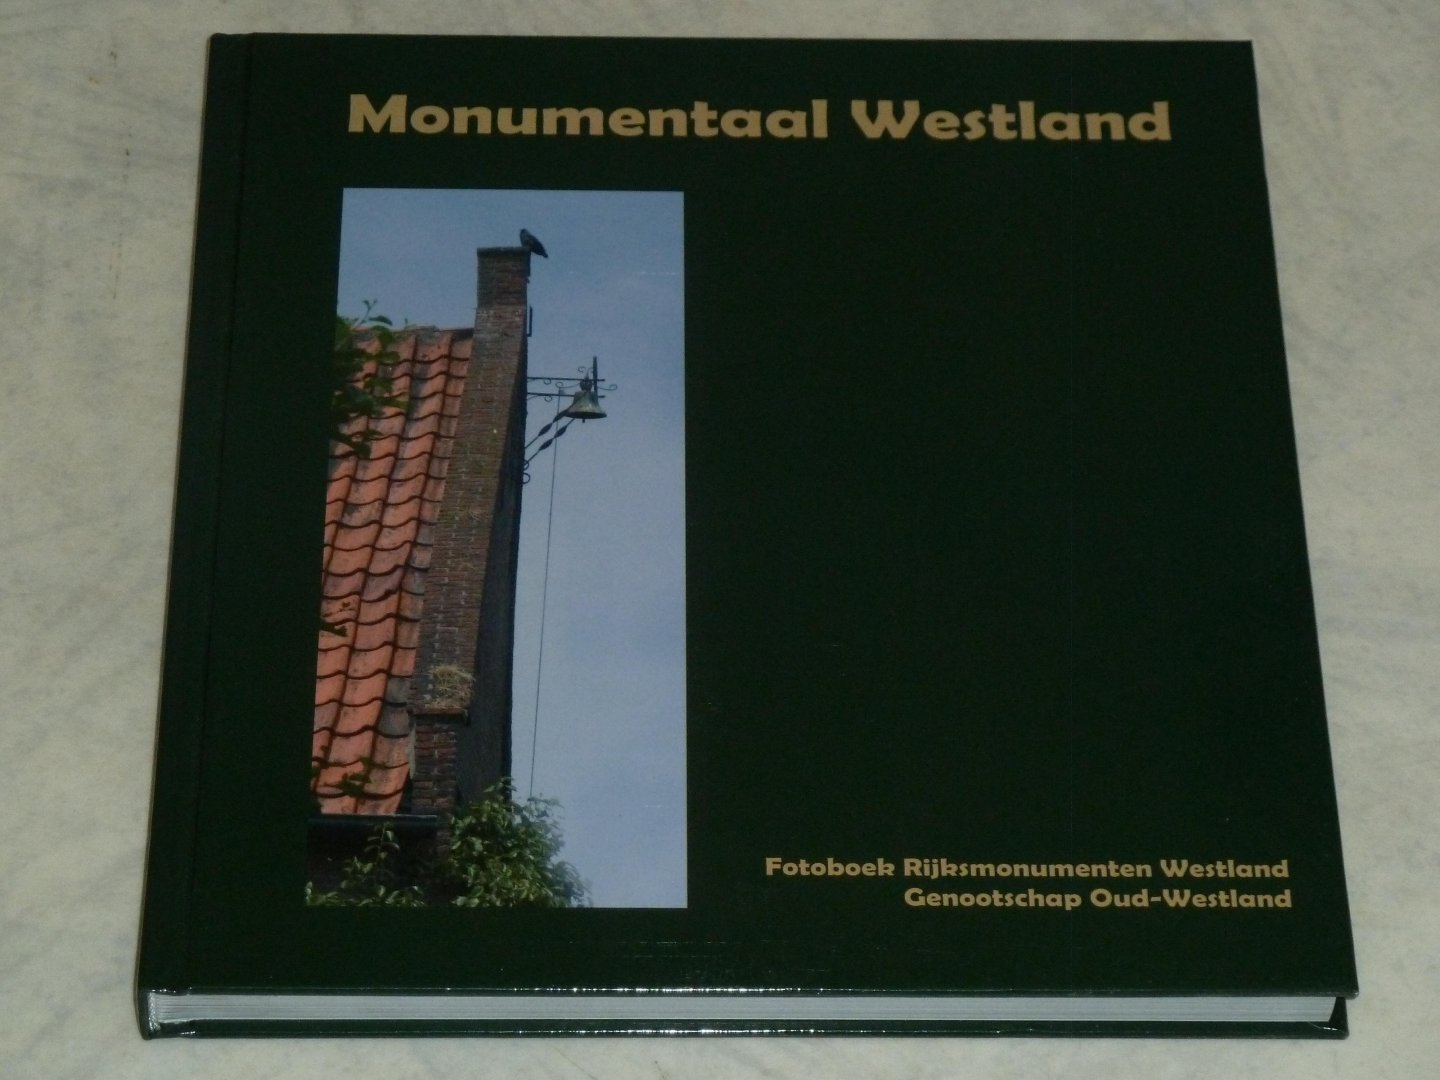 Groenewegen, Harry  / Middelburg, Arie-Frans /  Nieuwenhuizen, Ron  / Straalen, Thomas van  / Taalzorg, Isis - Monumentaal Westland. Fotoboek Rijksmonumenten Westland.